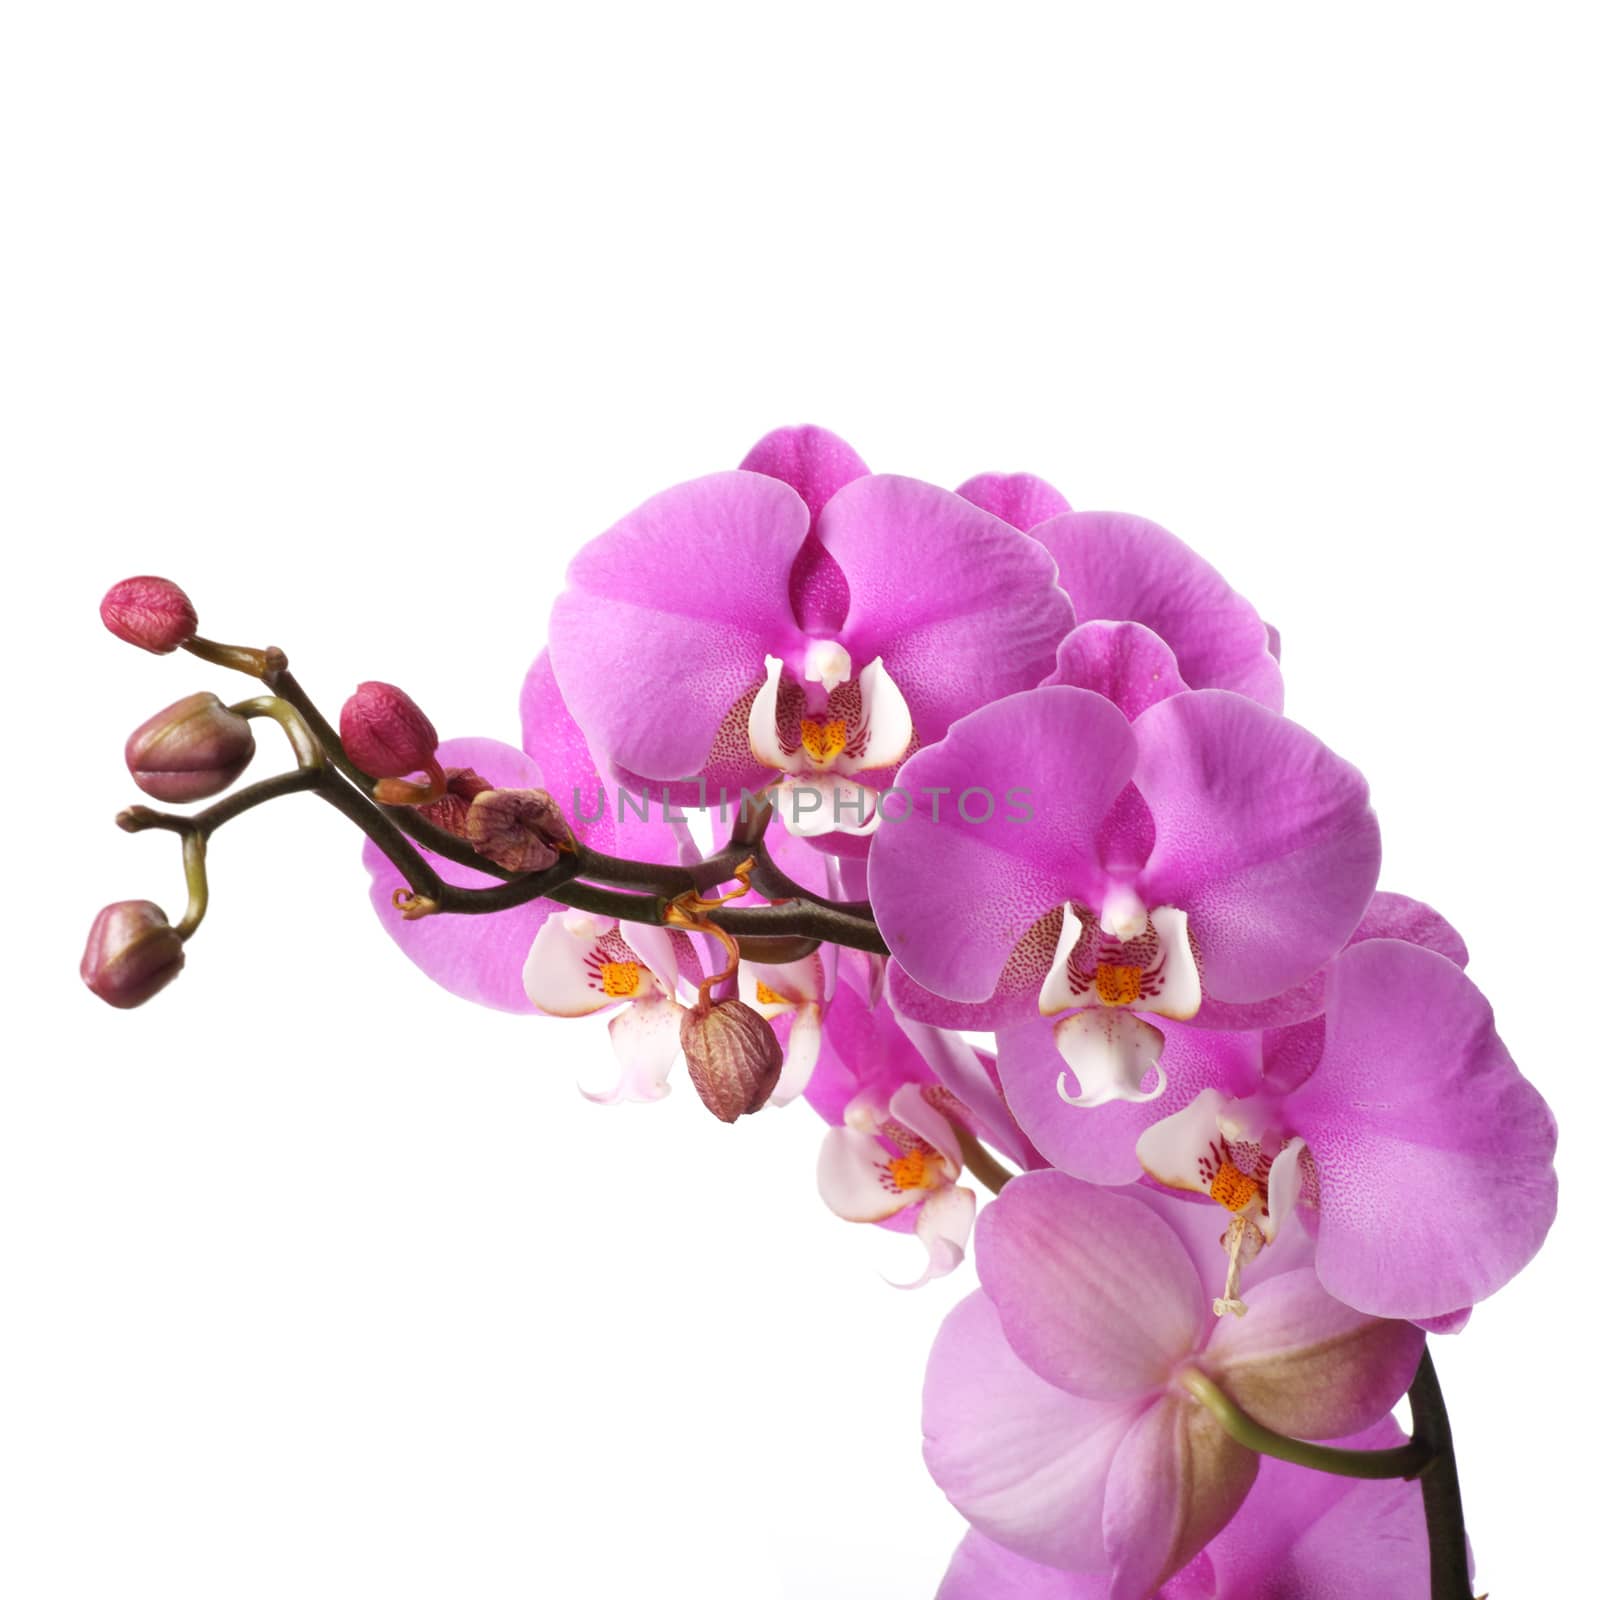 Pink streaked orchid flower by destillat